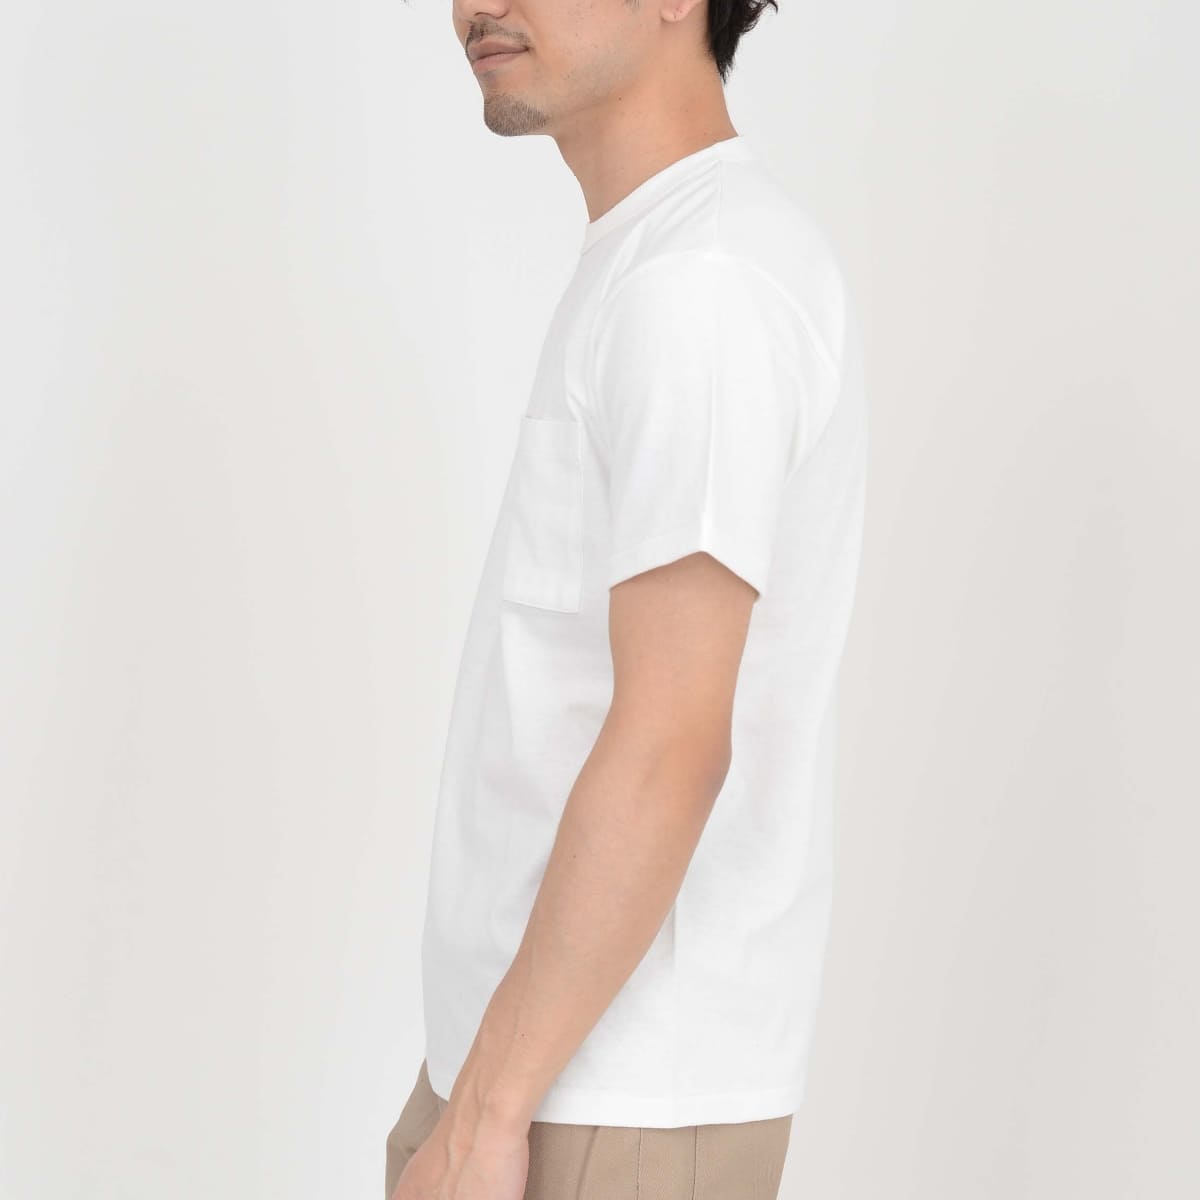 オープンエンド マックスウェイト バインダーネック ポケットTシャツ | ビッグサイズ | 1枚 | OE1119 | ホワイト